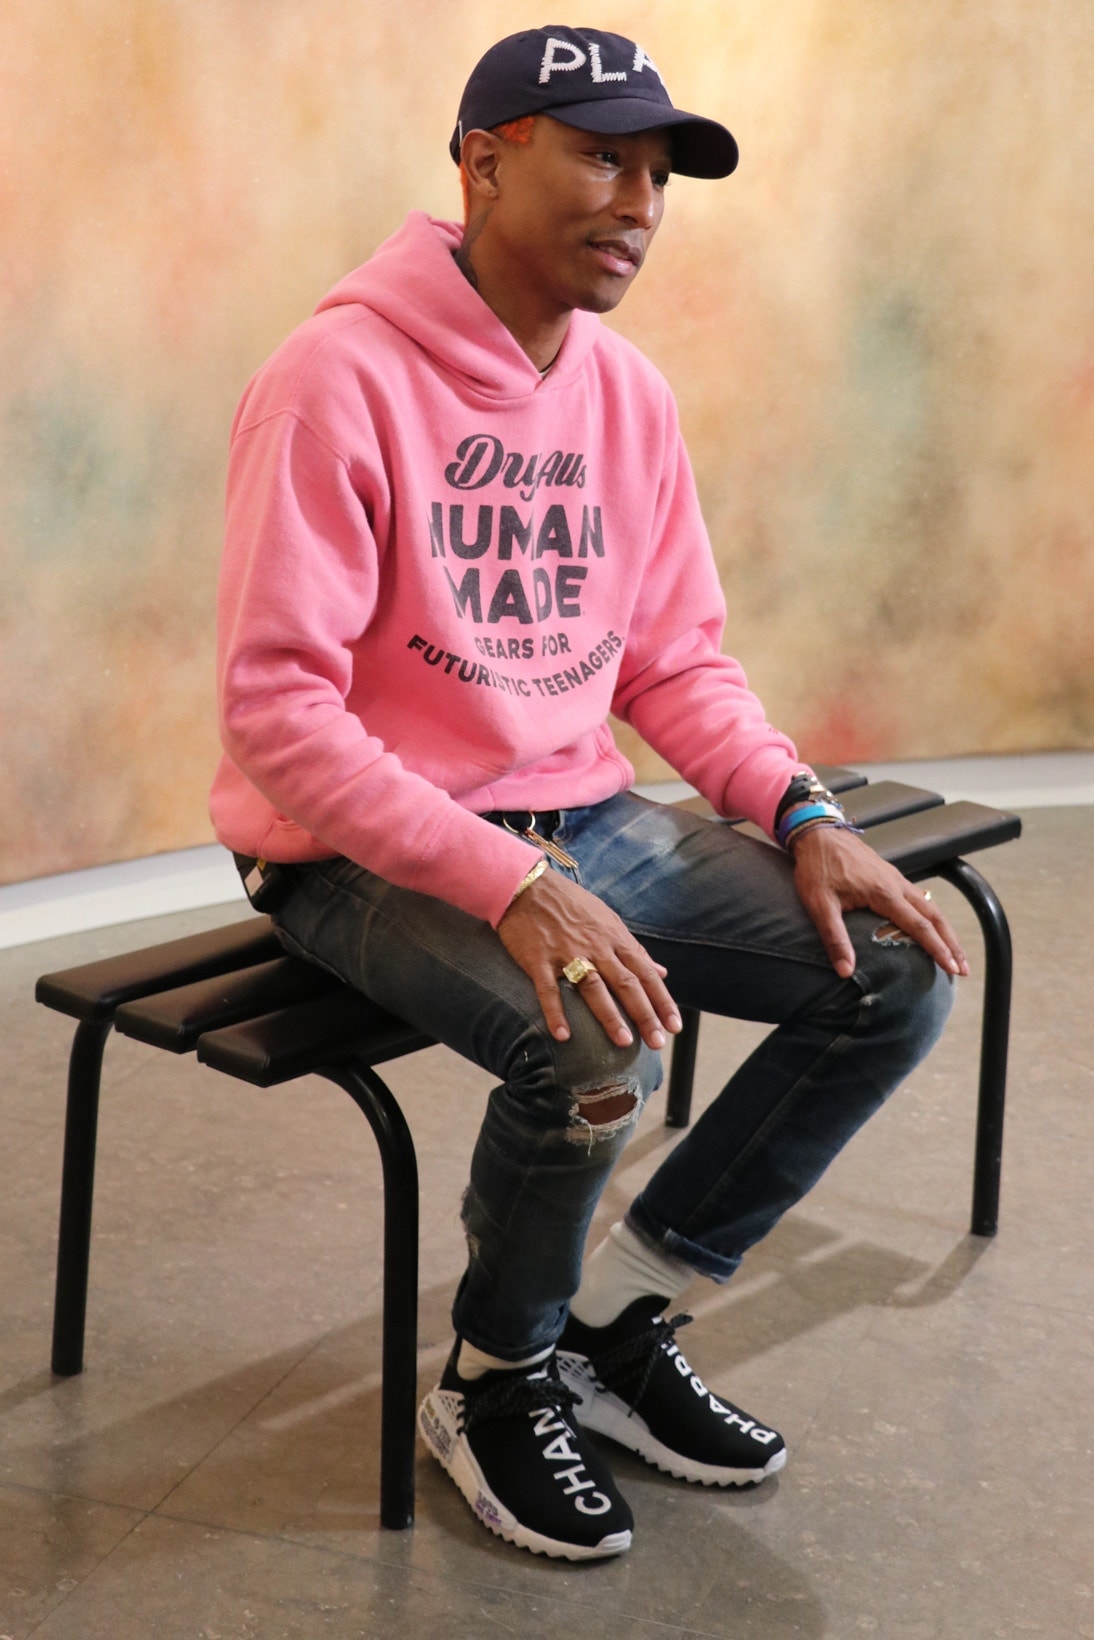 ファレル・ウィリアム自らが着用する世界で一足だけの Pharrell x Chanel x adidas Originals Hu NMDをチェック pharrell williams シャネル アディダス オリジナルス hypebeats ハイプビースト カスタマイズ 手書き メッセージ colette コレット